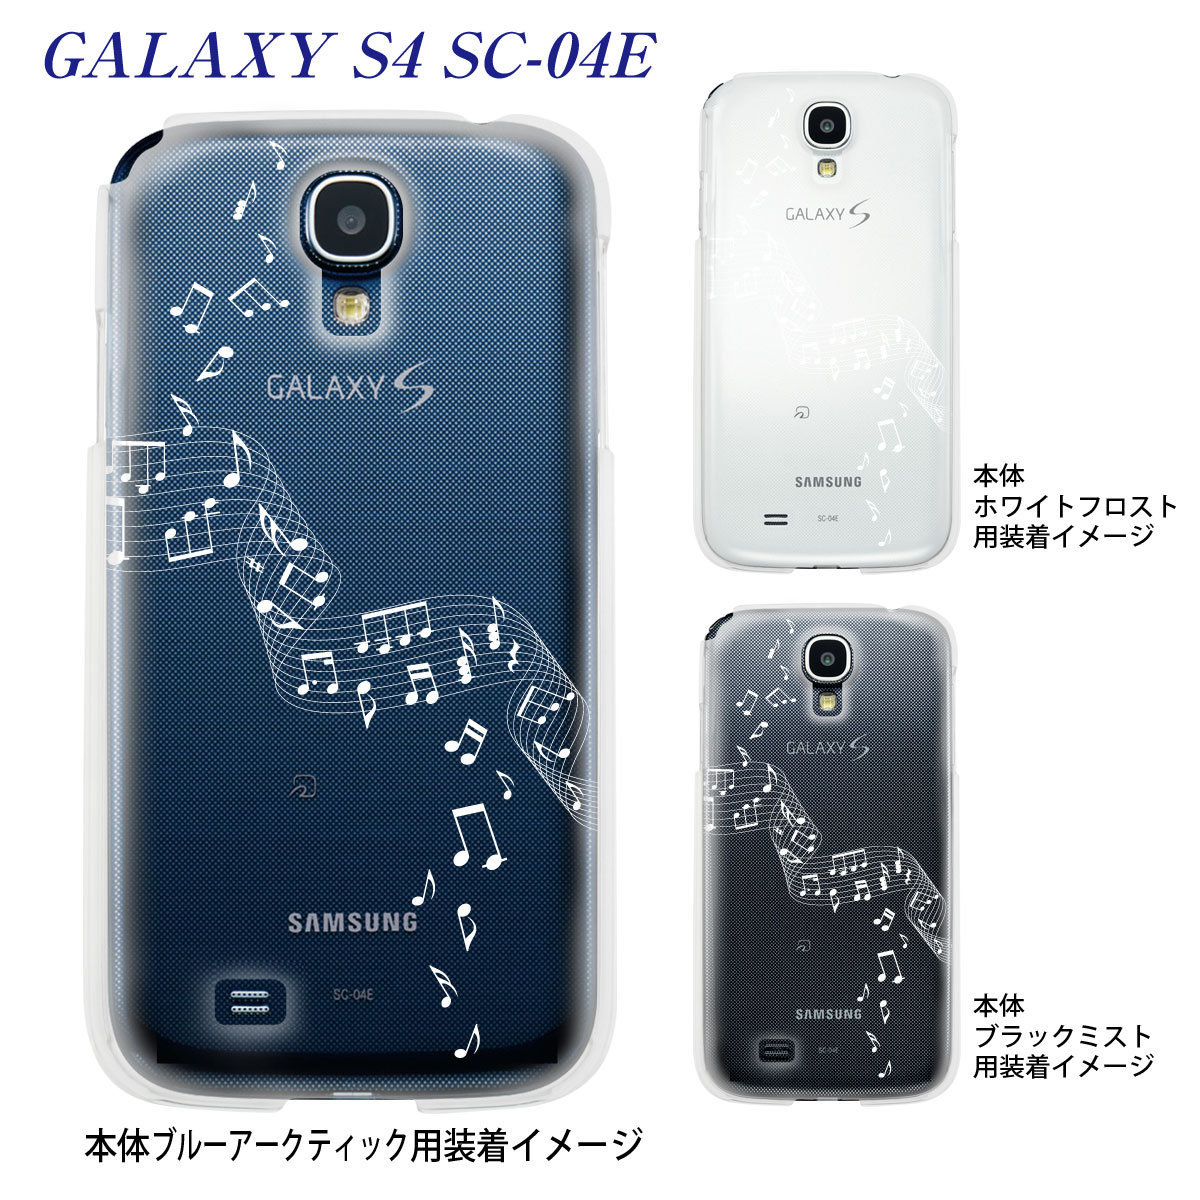 スマートフォン・携帯電話アクセサリー, ケース・カバー Clear ArtsGALAXY S4SC-04E 09-sc04e-mu0002